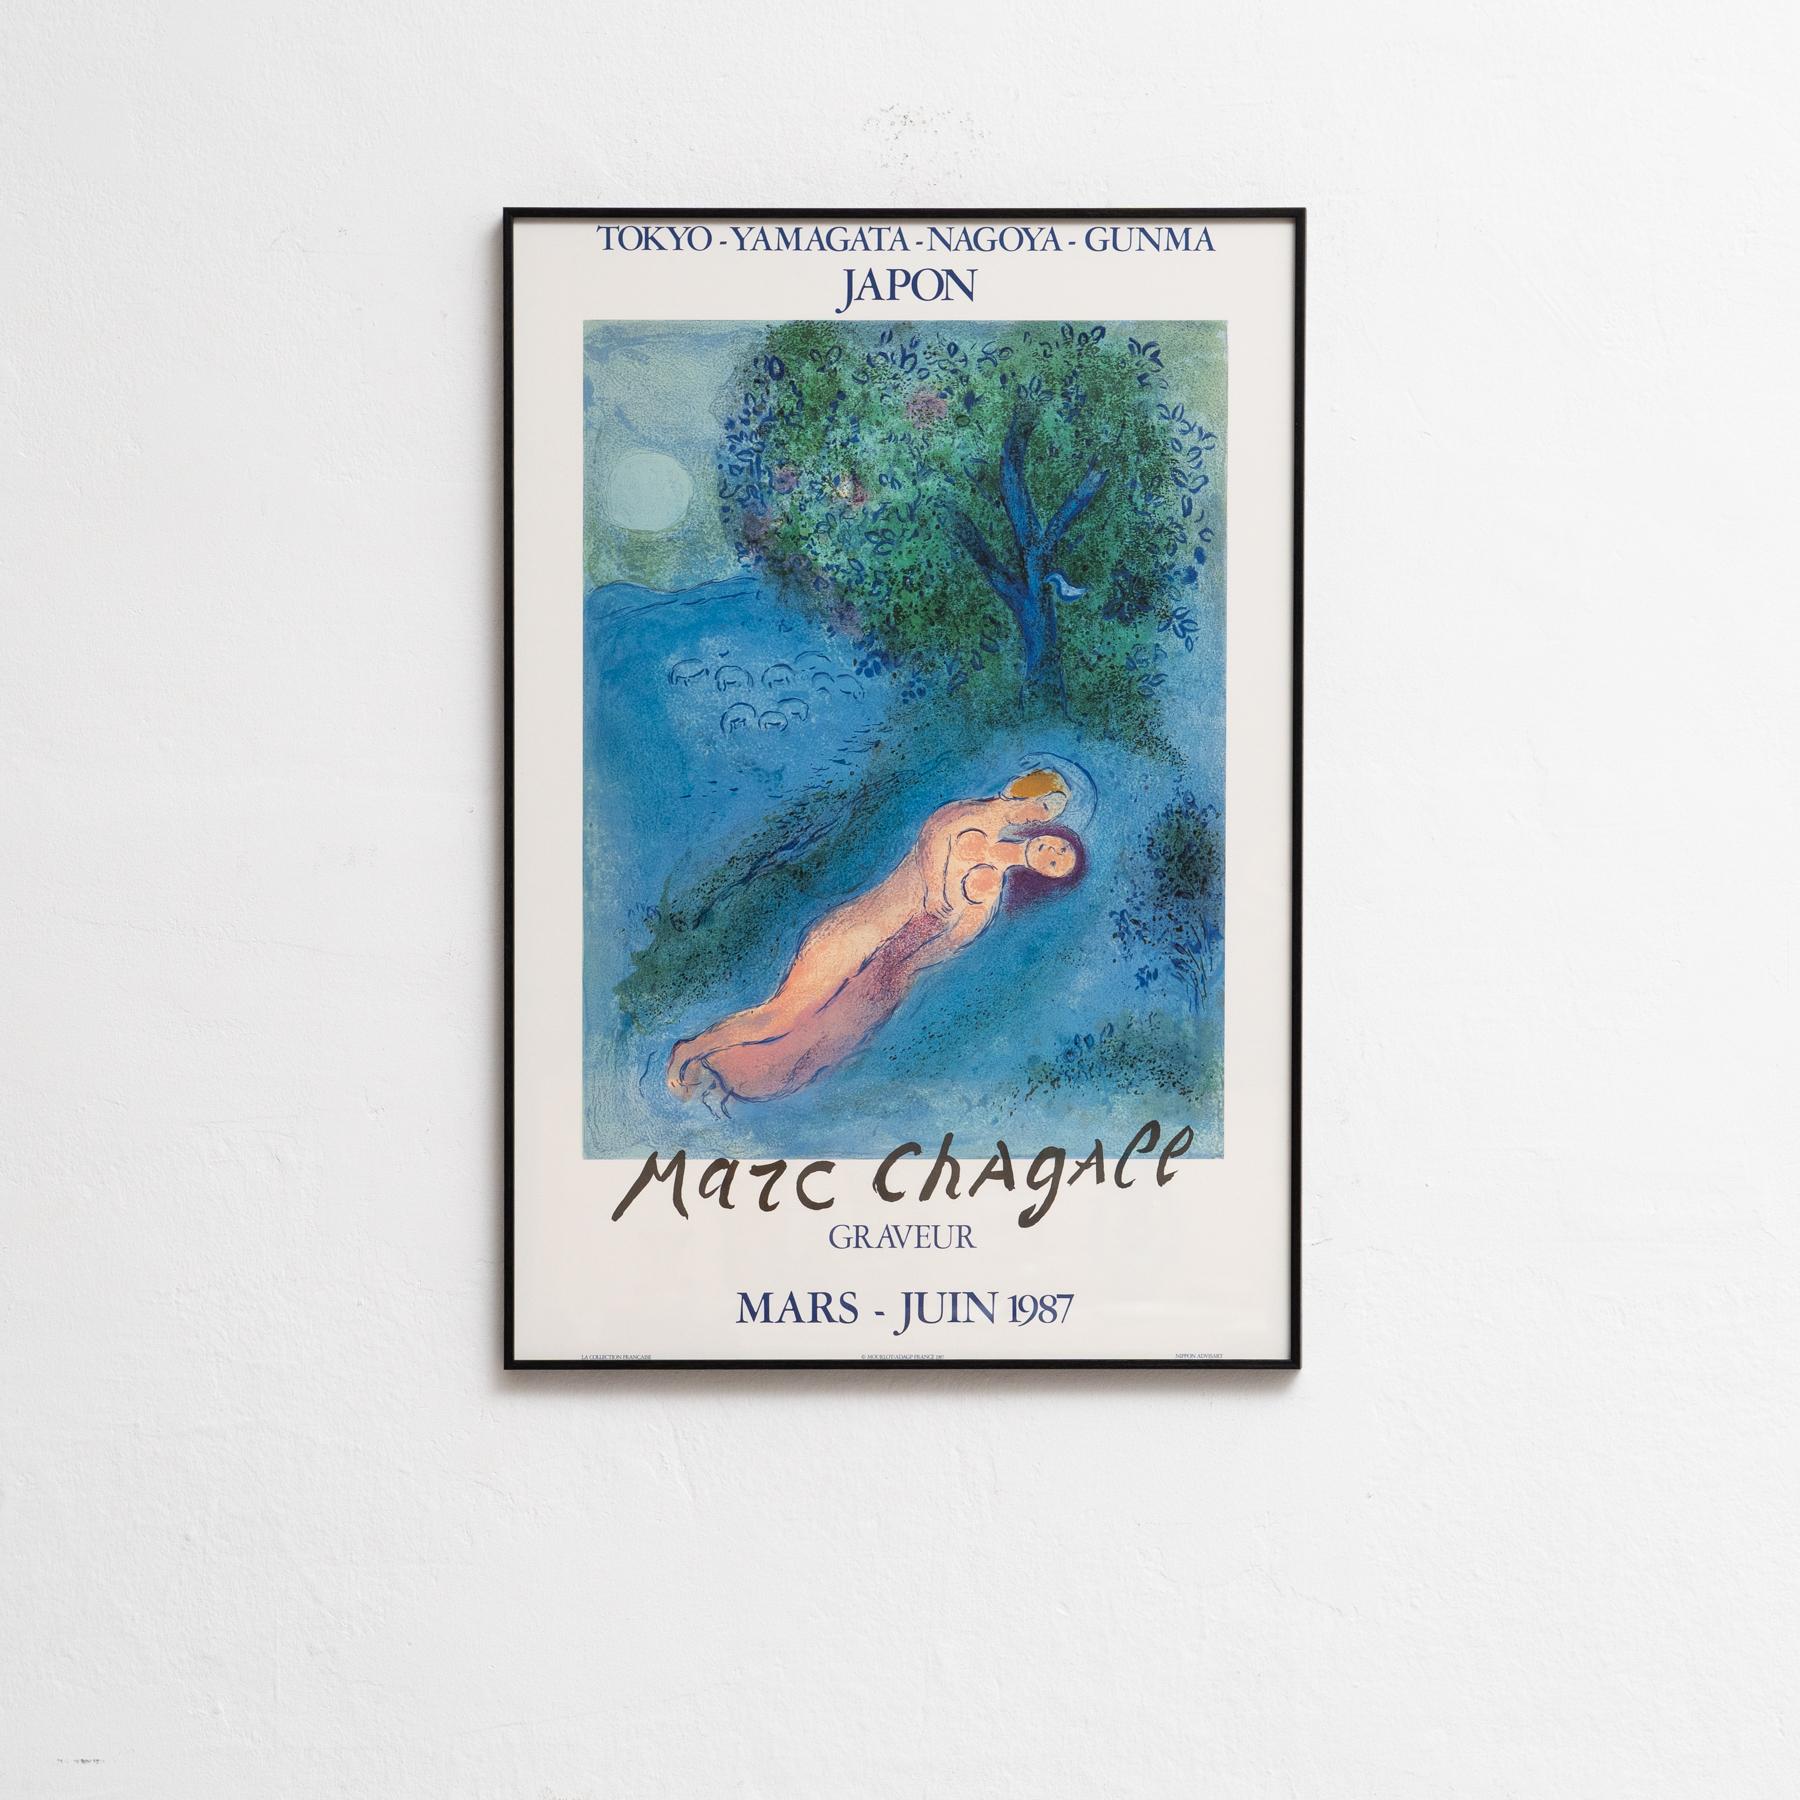 Mit diesem charmanten Marc Chagall-Poster, das 1987 von Mourlot gedruckt wurde, bringen Sie einen Hauch von Farbe in Ihre Räume. Bekannt für seine traumhaften Kompositionen und die fantasievolle Verwendung von Farben, inspirieren und verzaubern